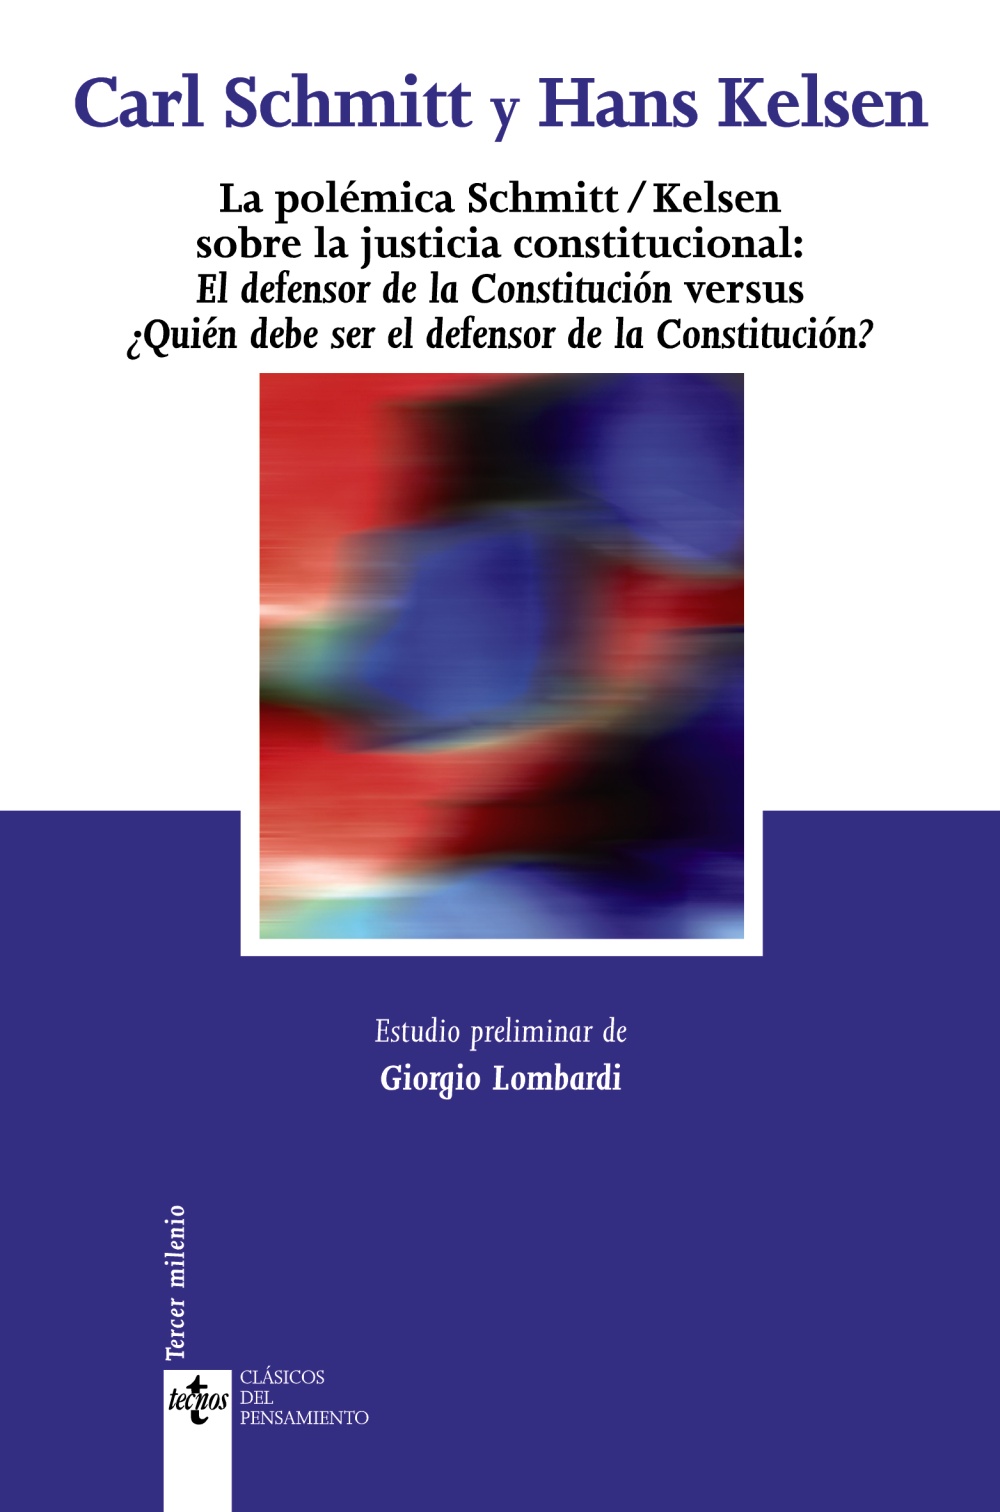 La polémica Schmitt/Kelsen sobre la justicia constitucional. 9788430946464